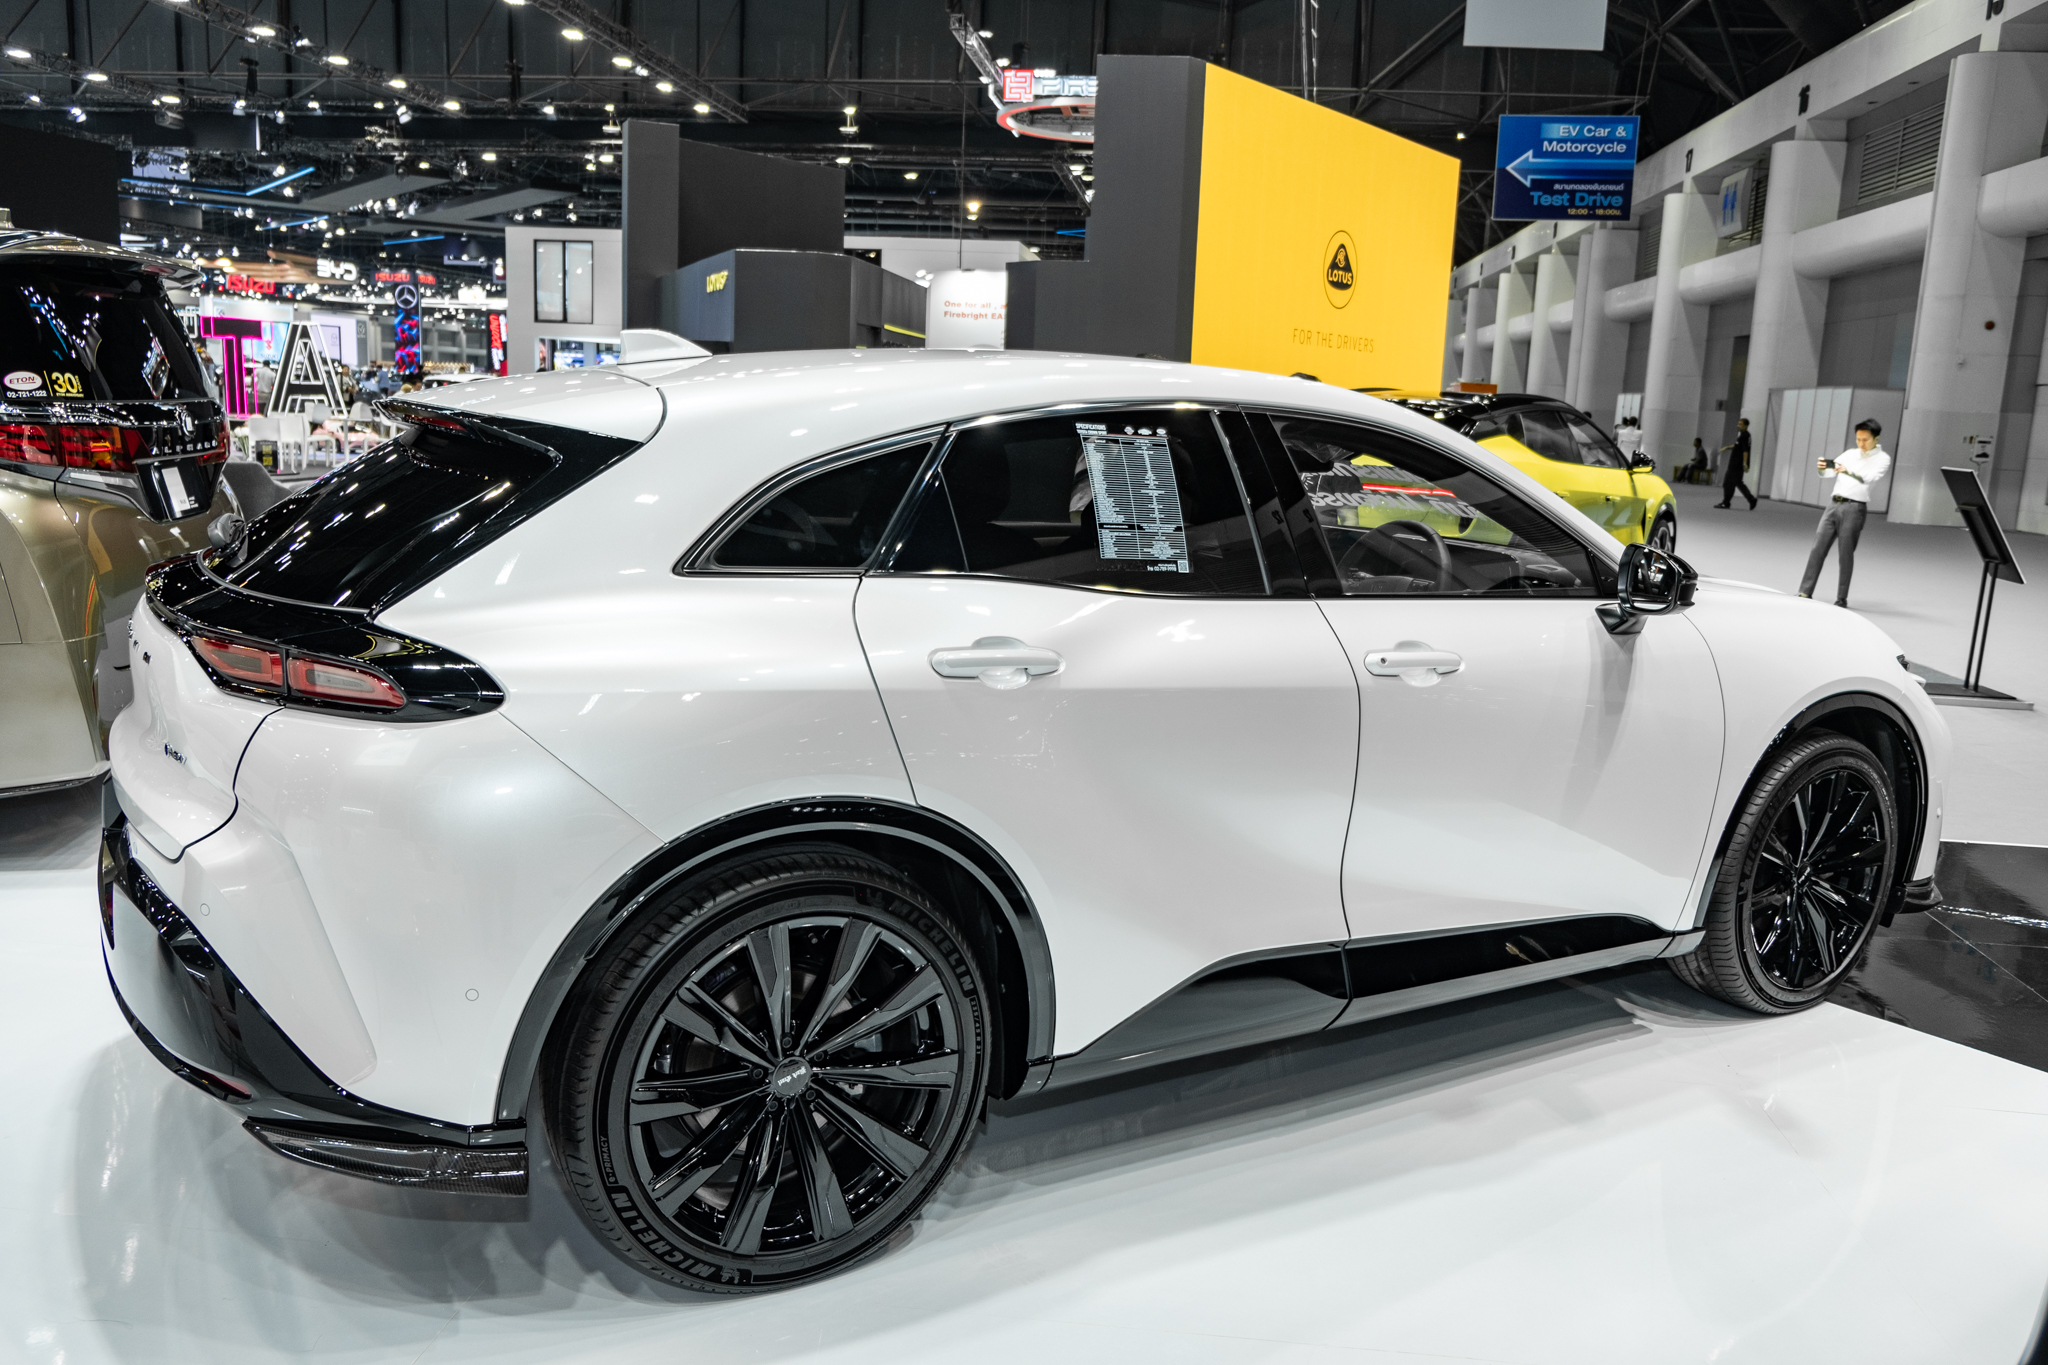 Ngồi thử mới thấy Toyota Crown Sport đáng tiền: Nhiều trang bị như xe sang, đánh lái bánh sau, thiết kế vượt tầm xe phổ thông - ảnh 17